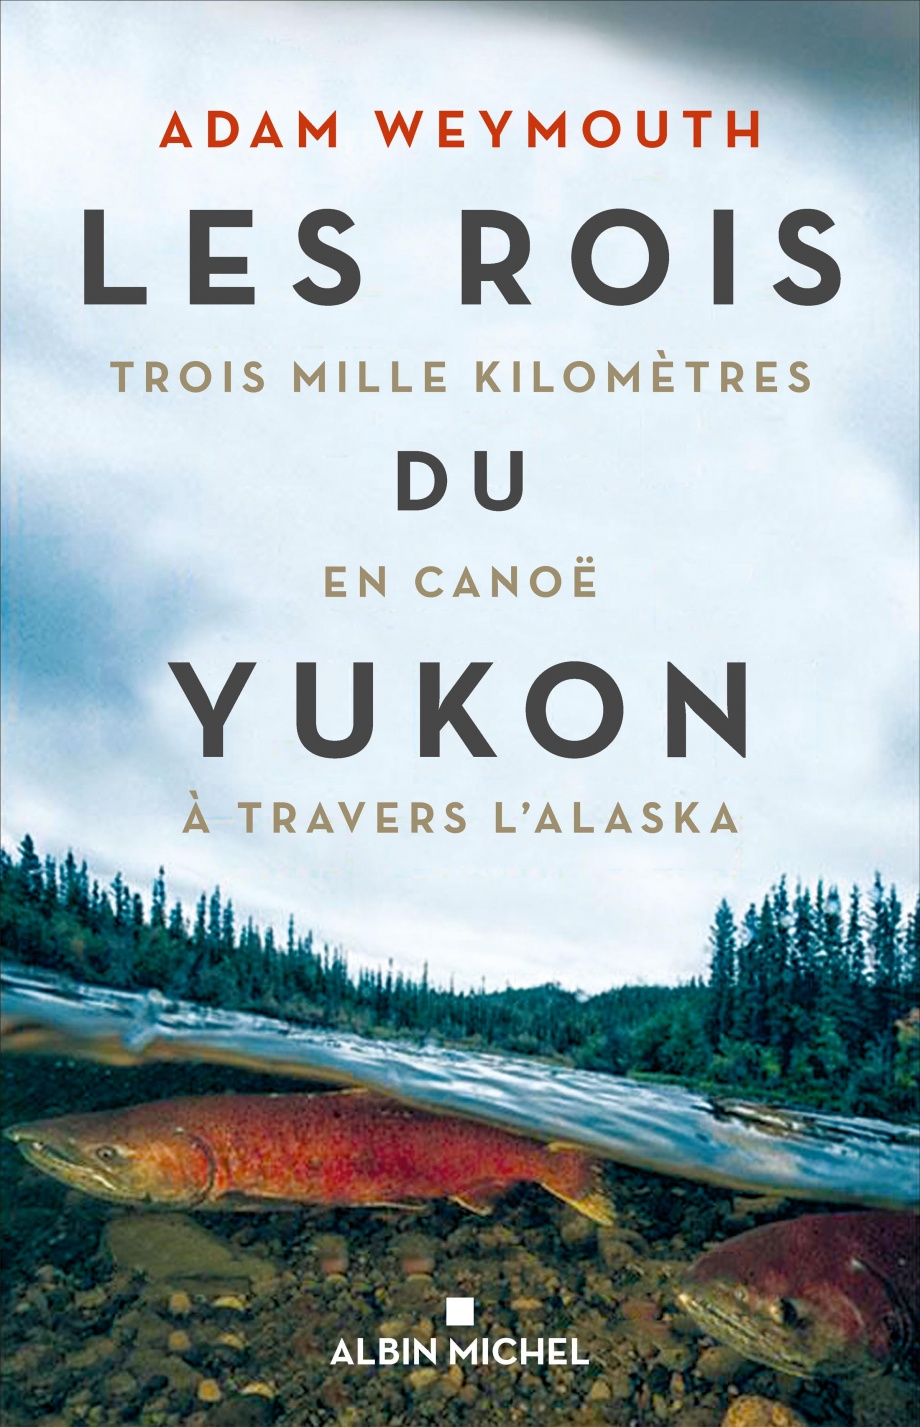 Les rois du Yukon : trois mille kilomètre en canoë à travers l'Alaska de Adam Weymouth